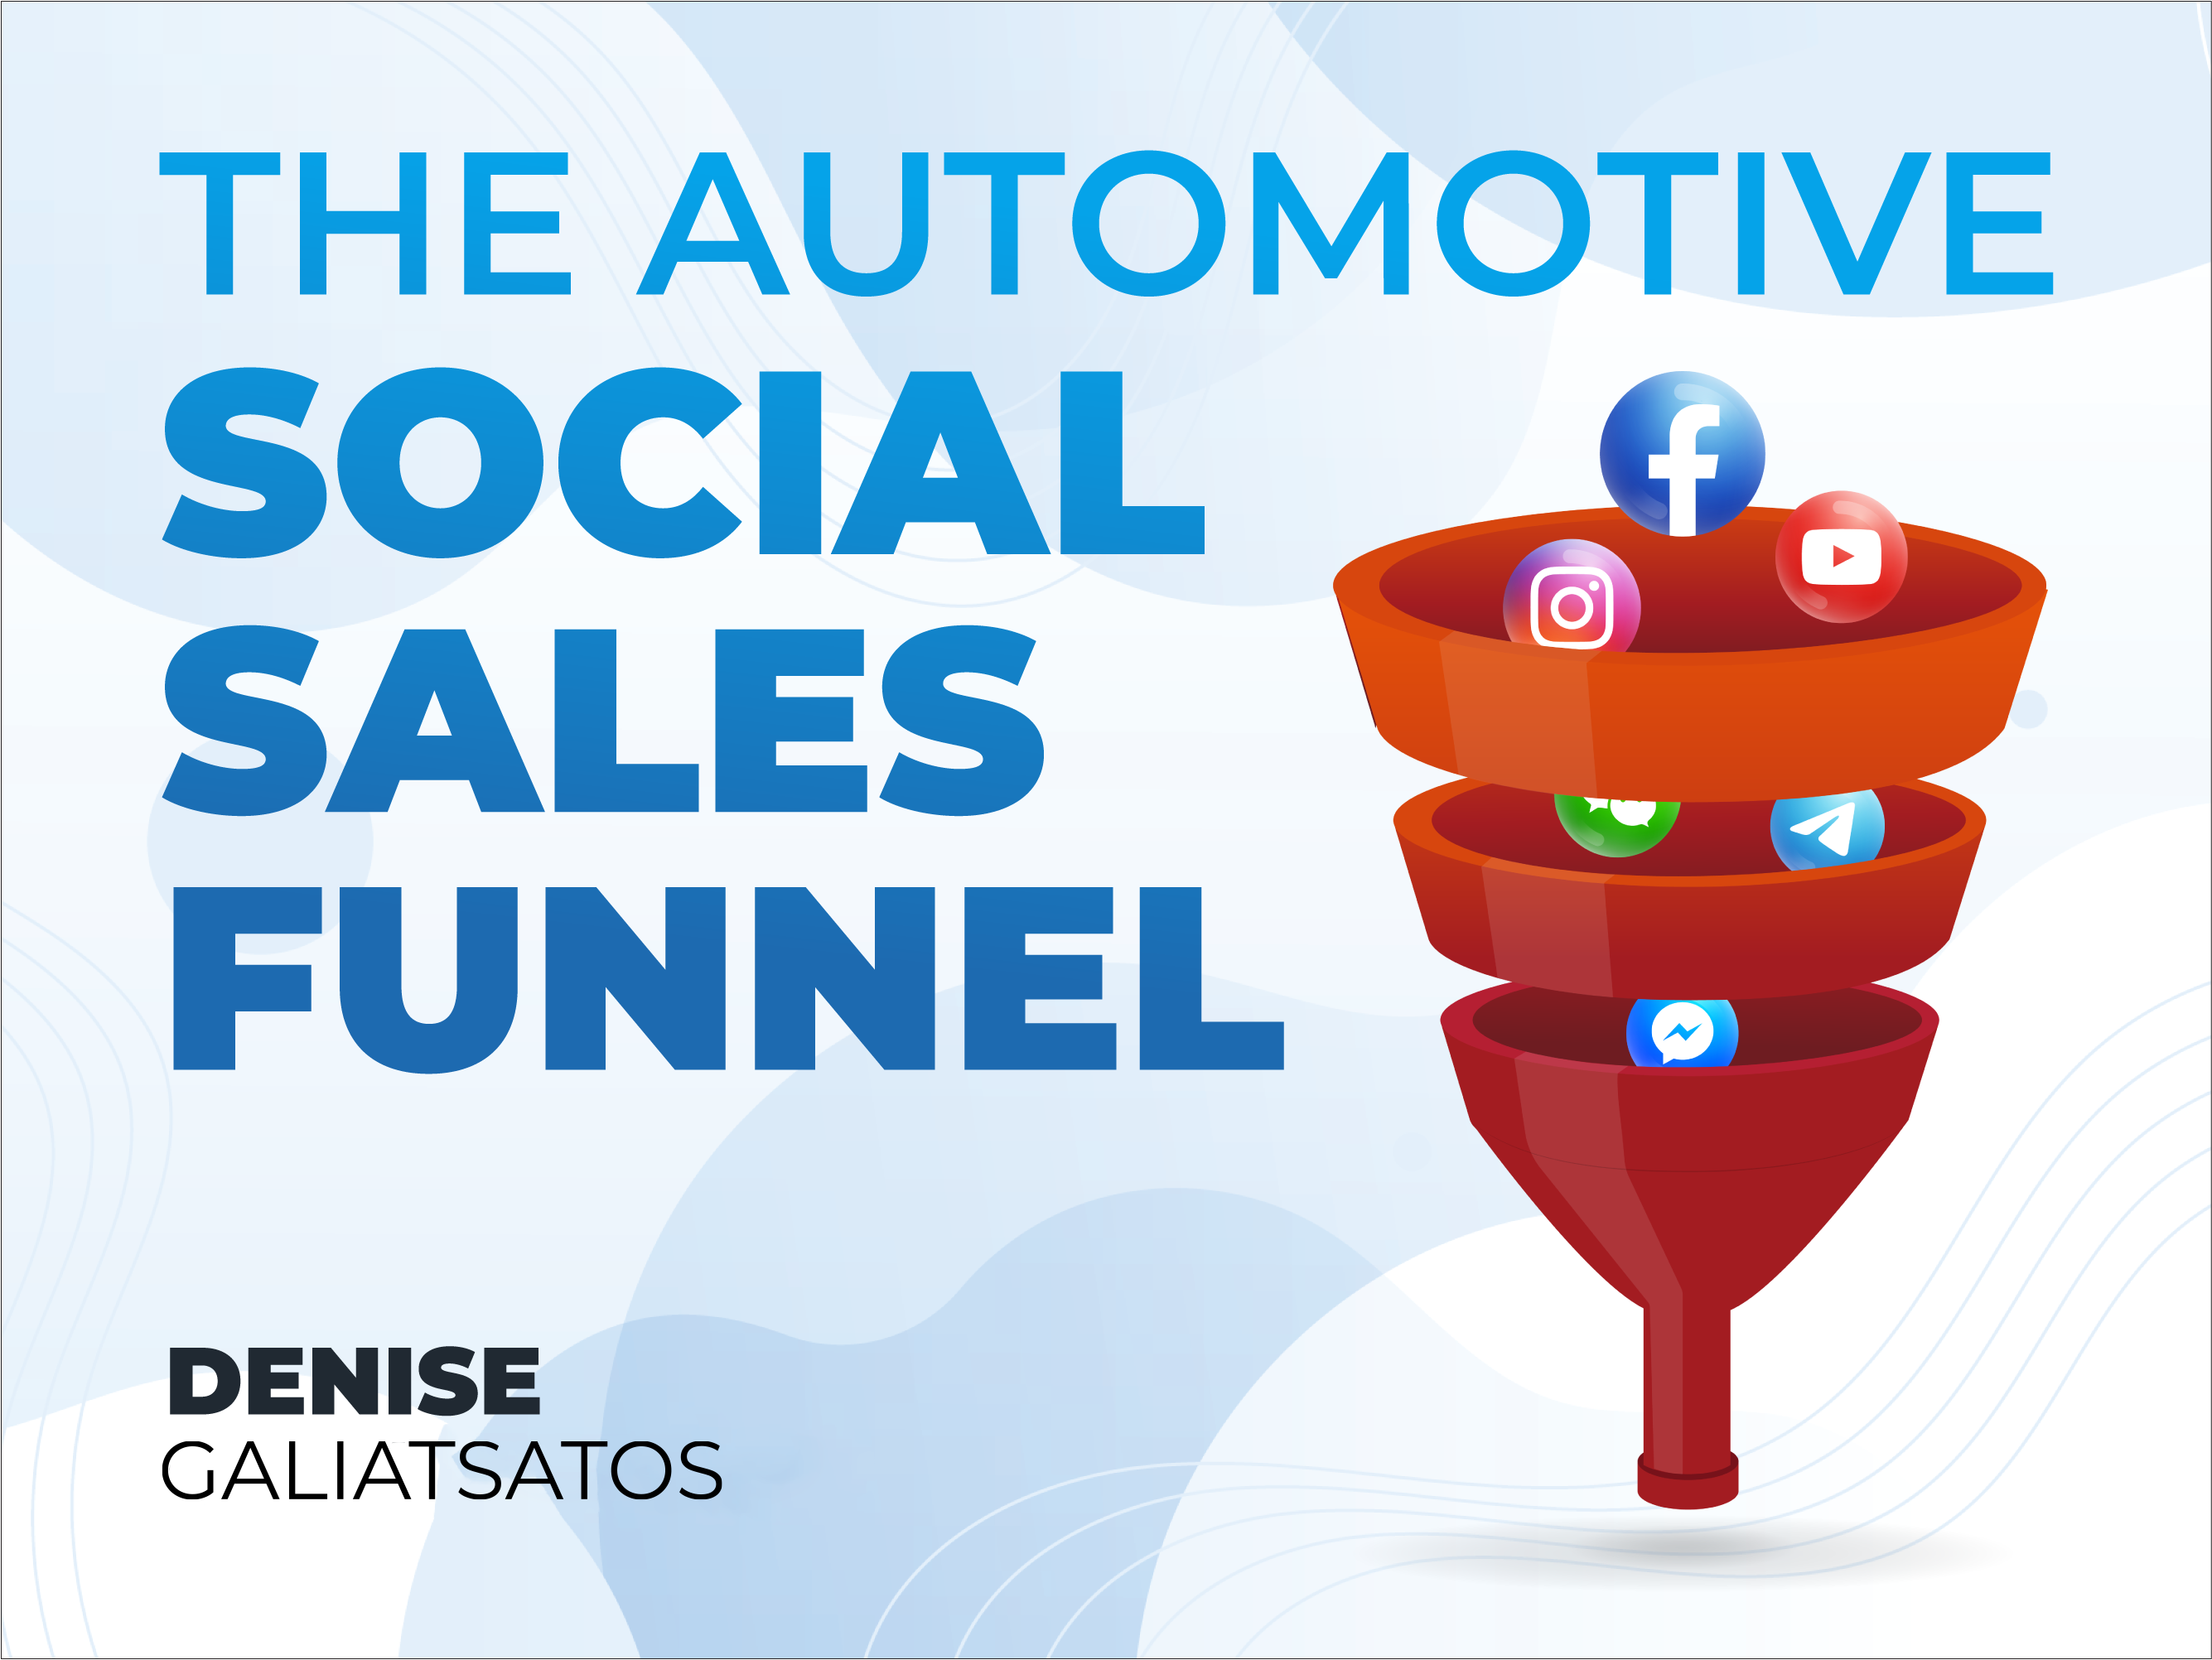 The Automotive Social Sales Funnel